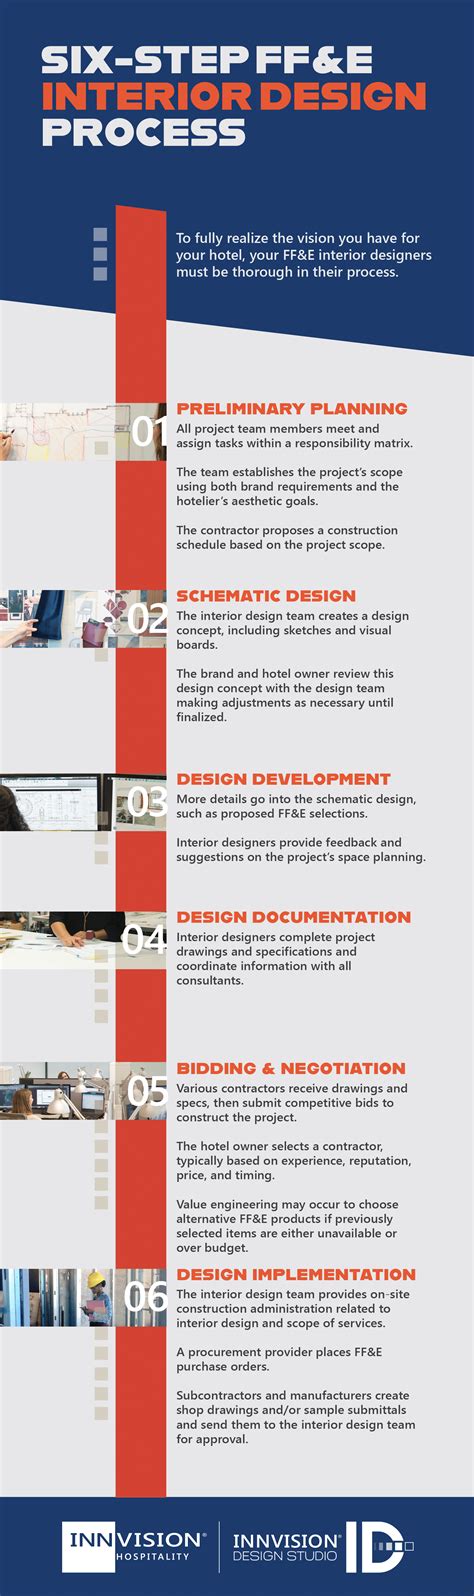 Interior Design Process Infographic